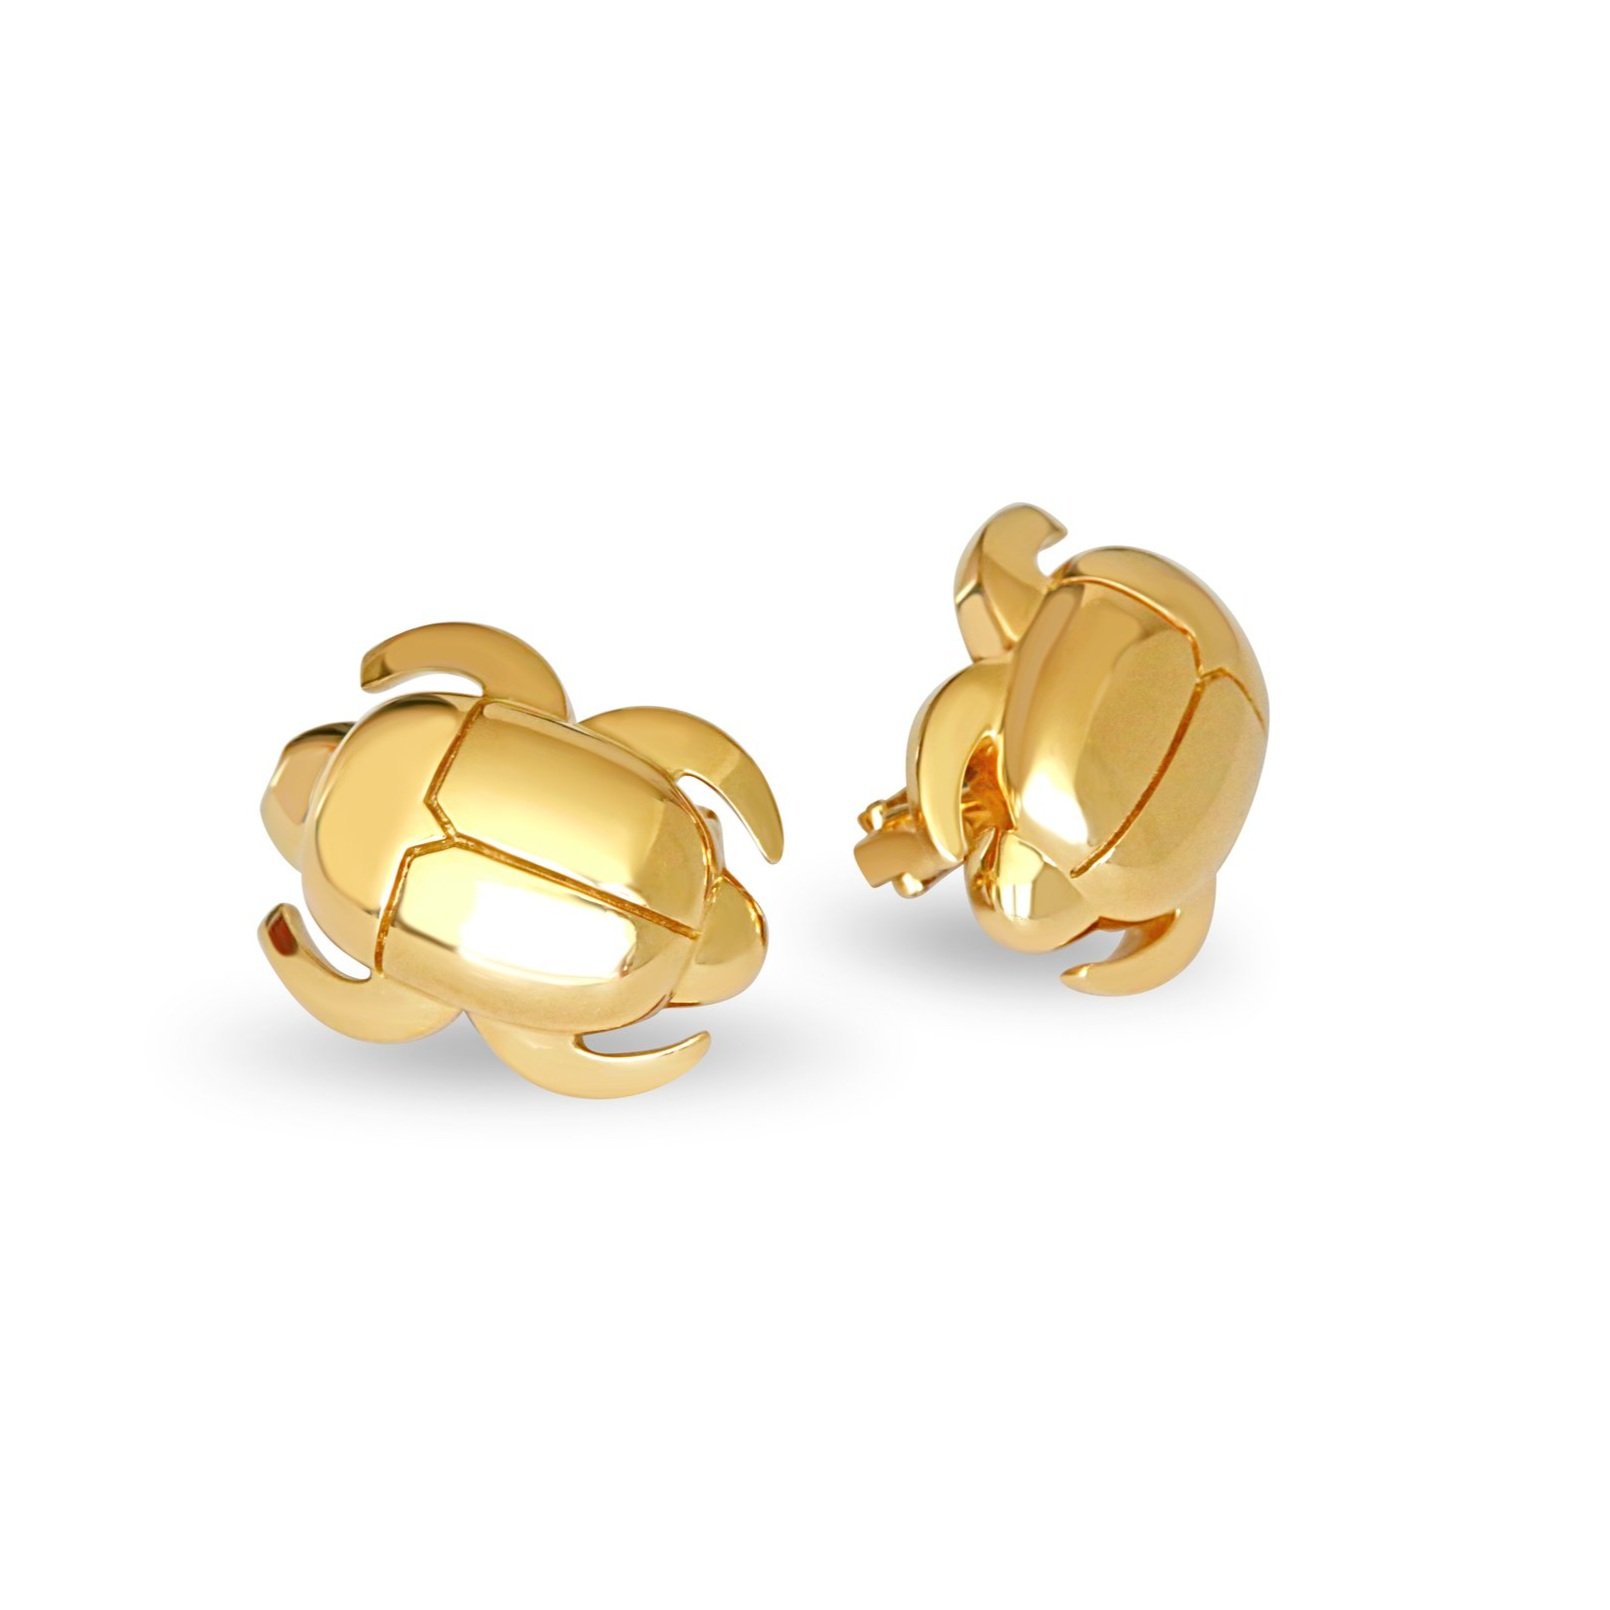 A+Cartier+Bug+Scarab+Earrings+18K+Gold.jpg